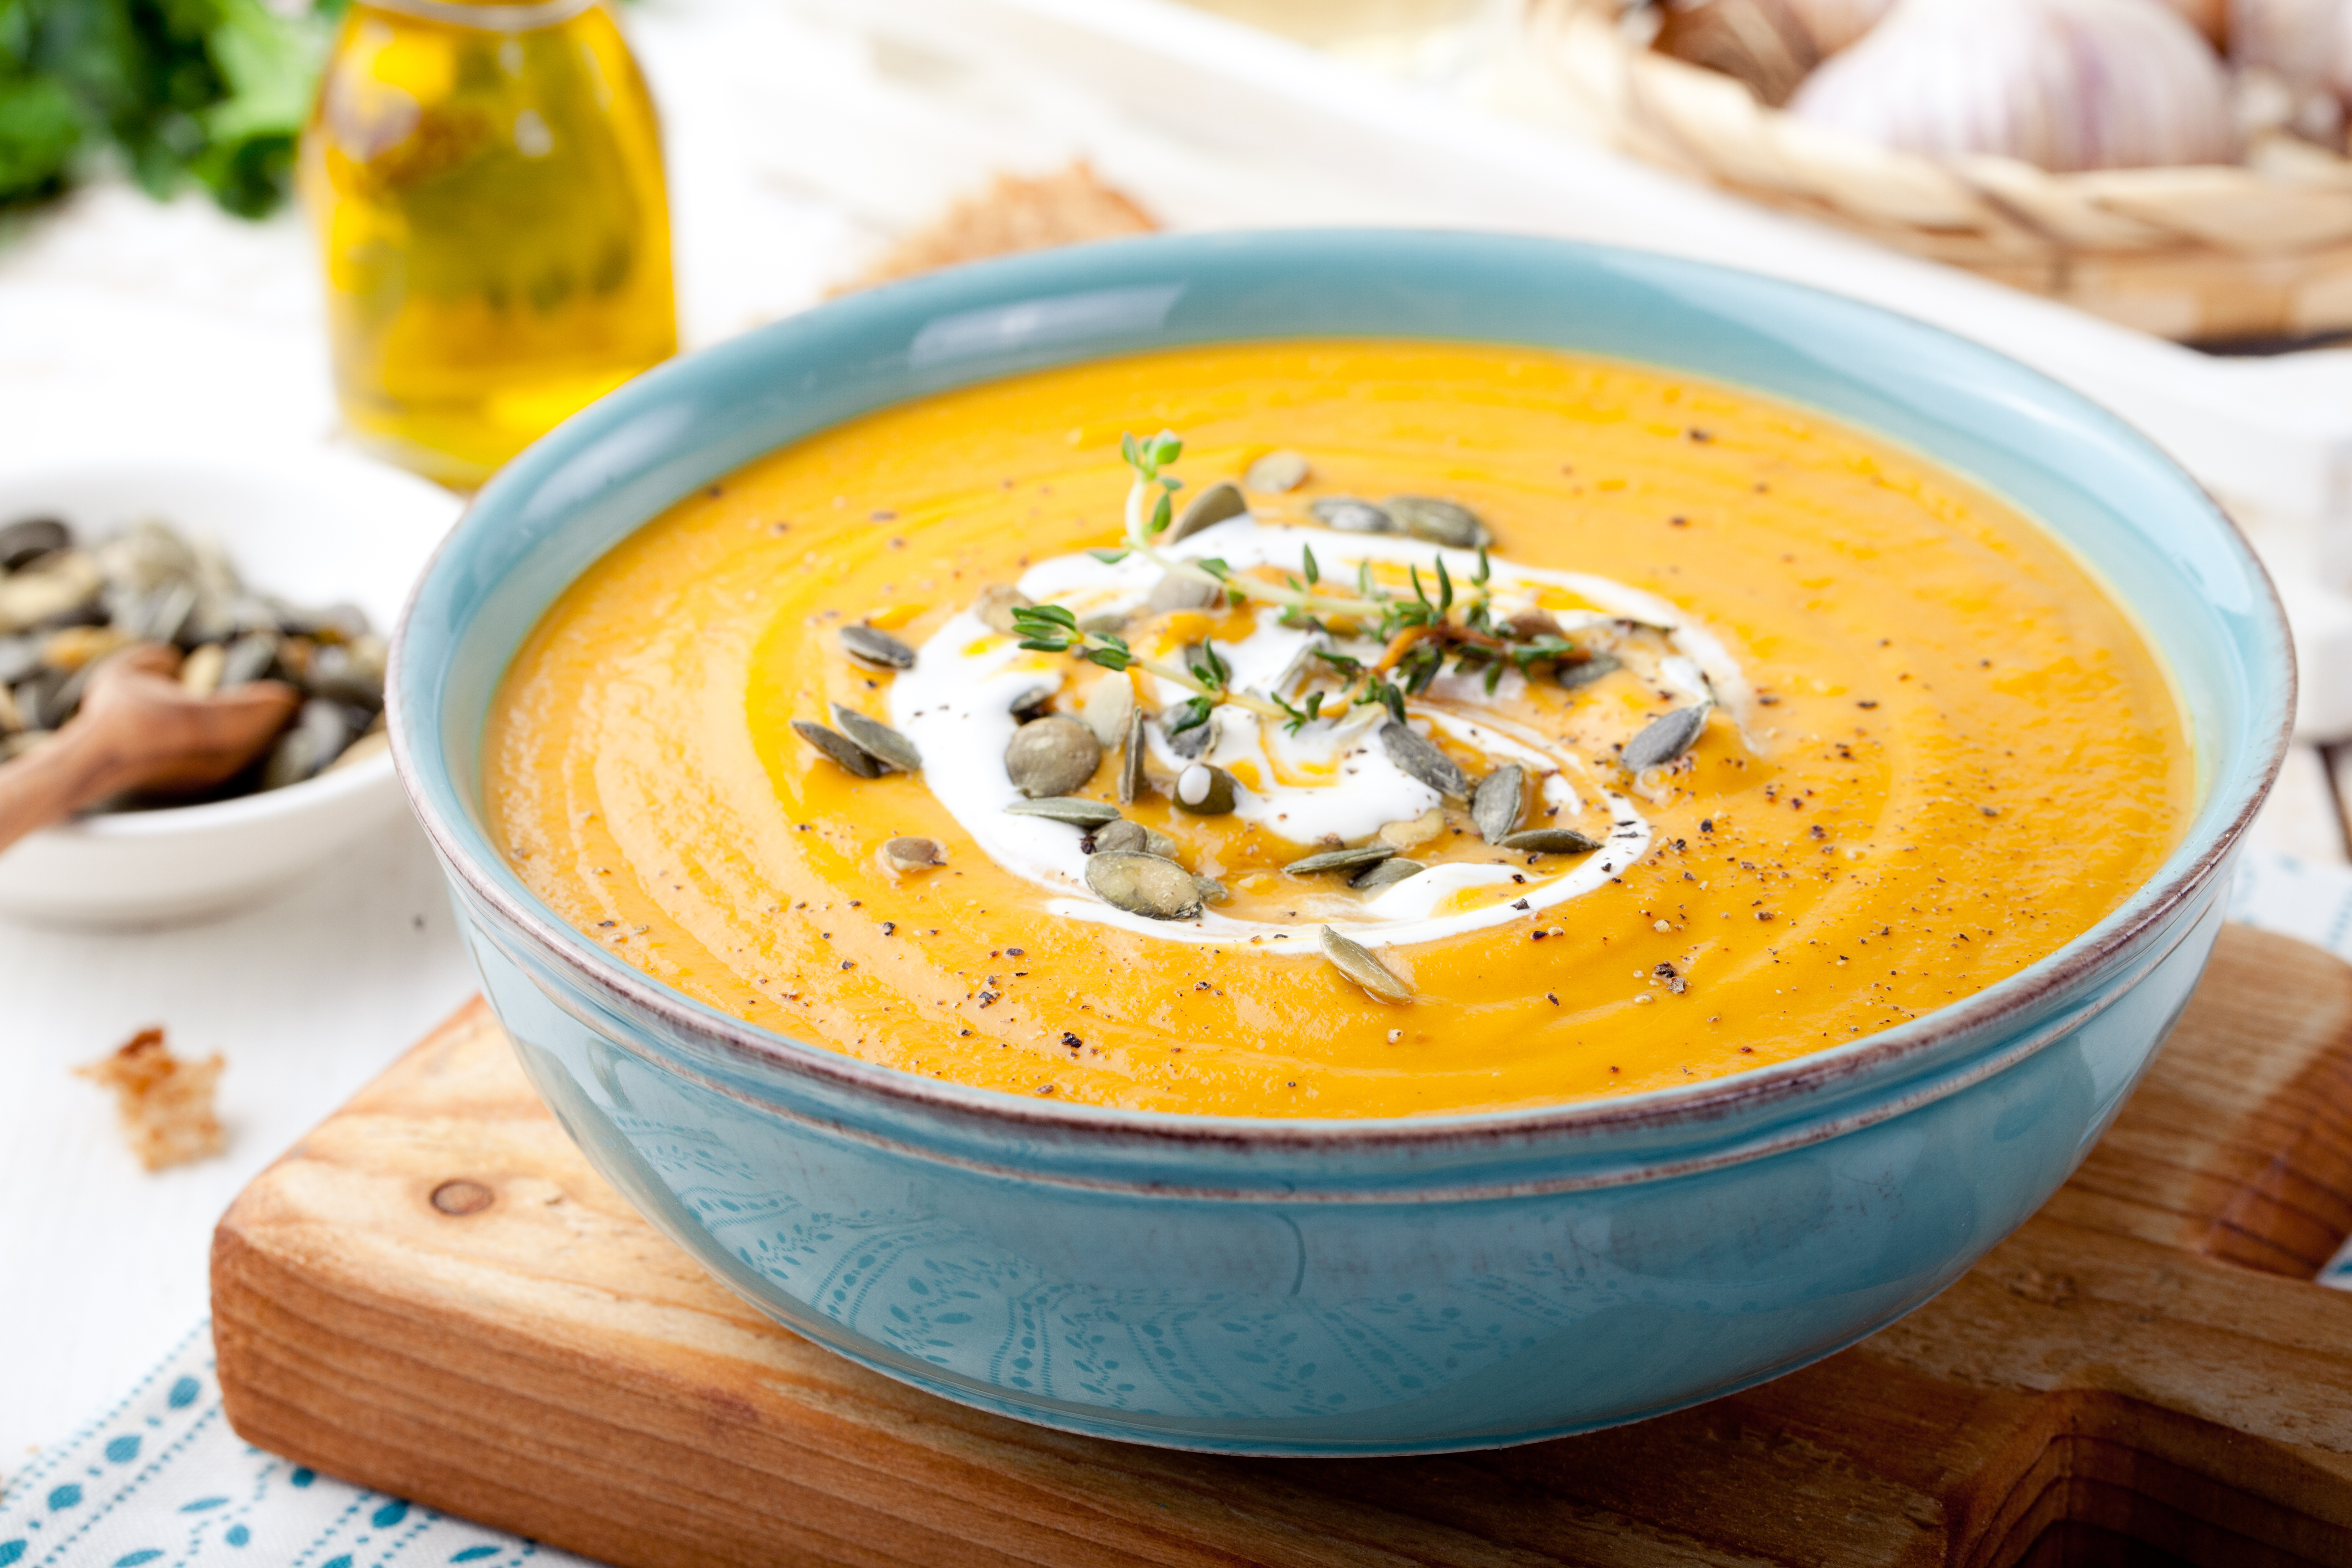 Header image of soup.